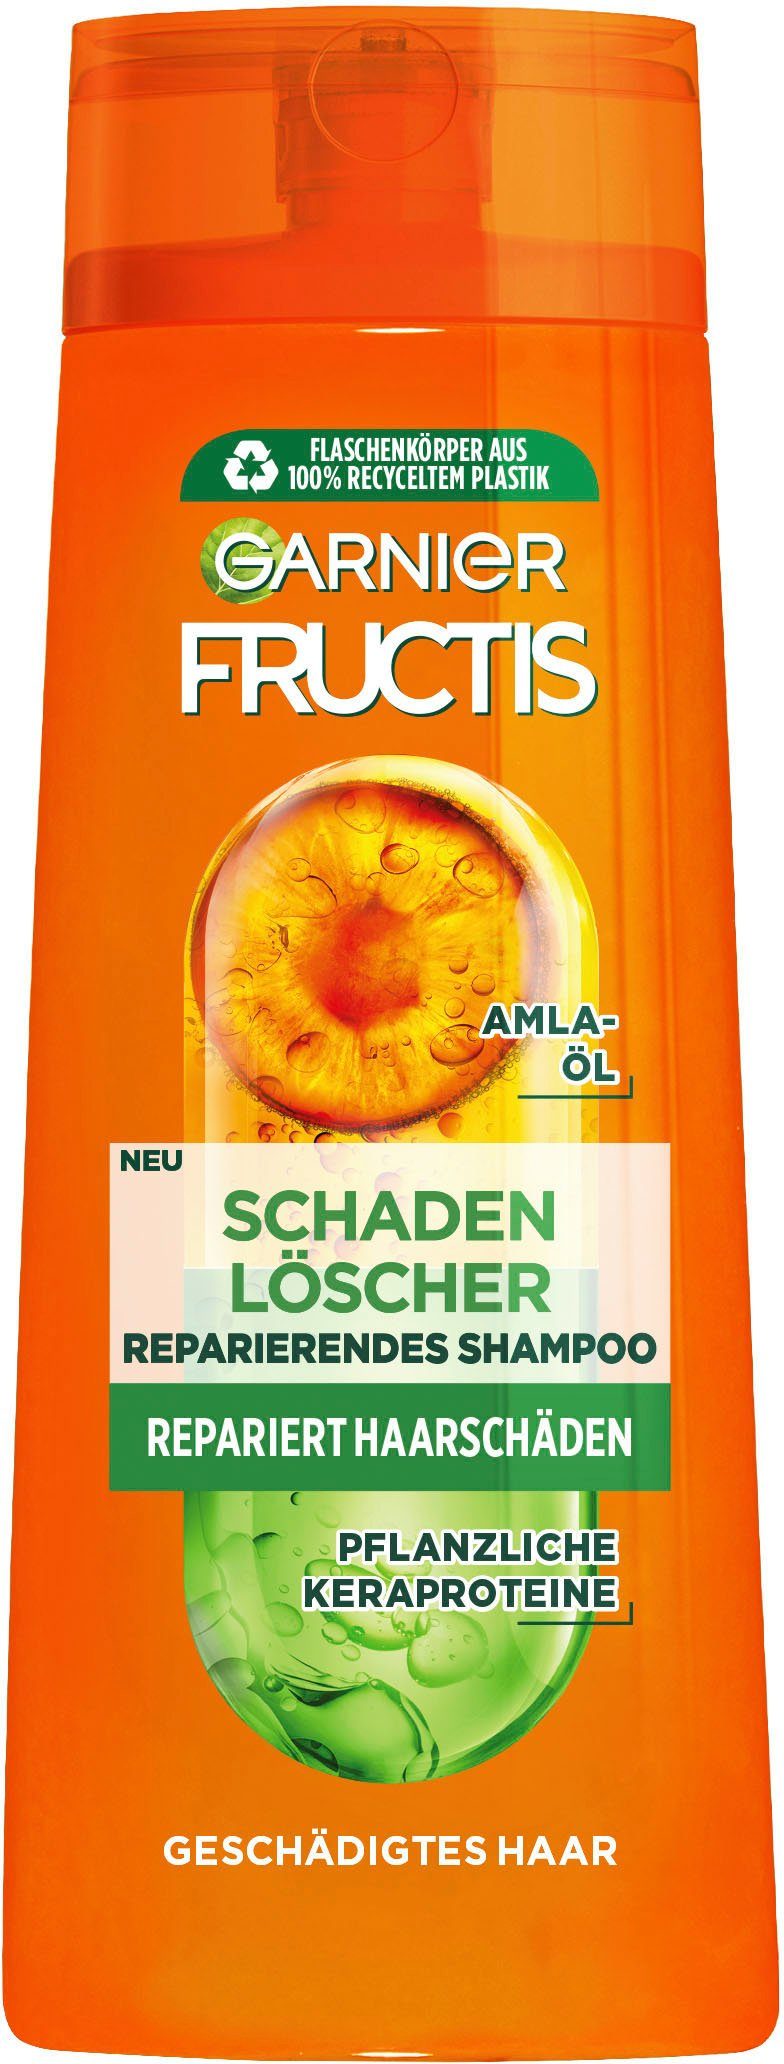 Haarshampoo Shampoo, Fructis 6-tlg. Garnier GARNIER Set, Schadenlöscher